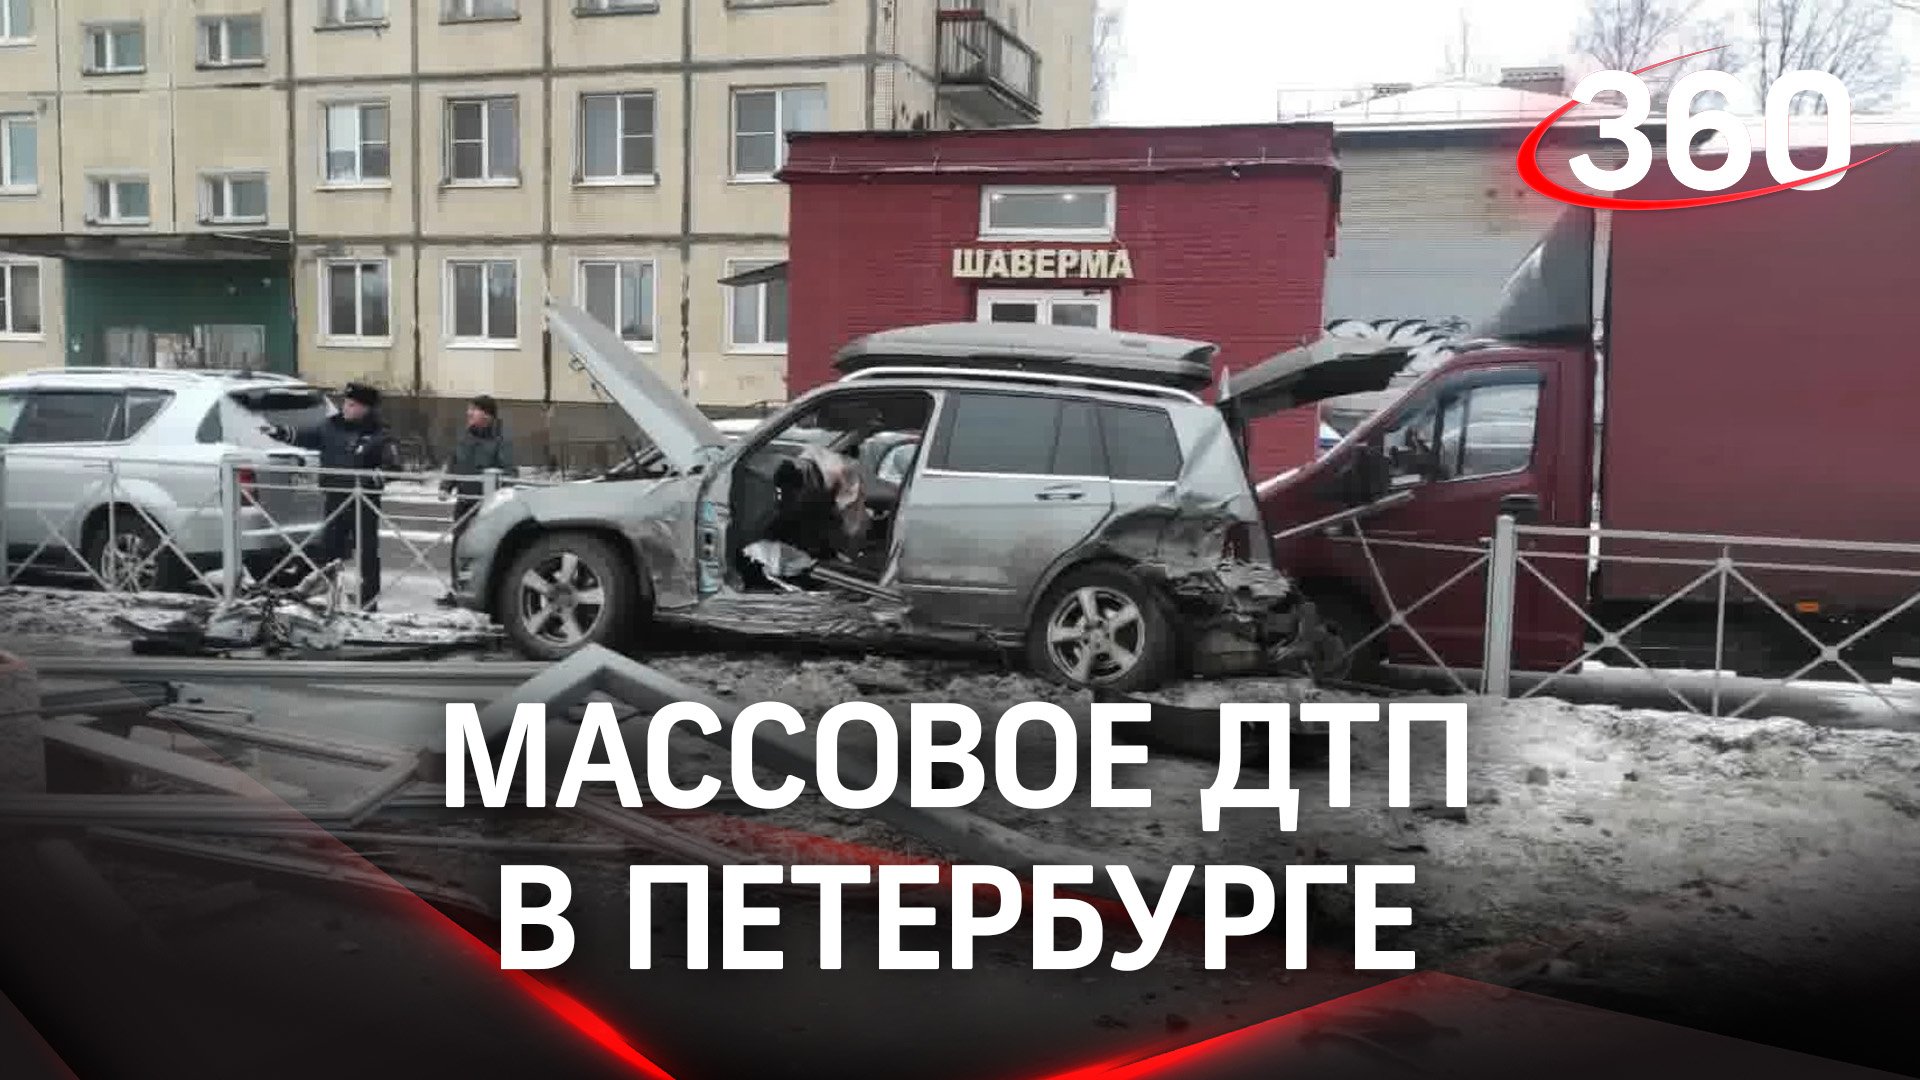 Без прав и номеров, но под градусом: ДТП с девятью машинами в Петербурге. Кадры погони